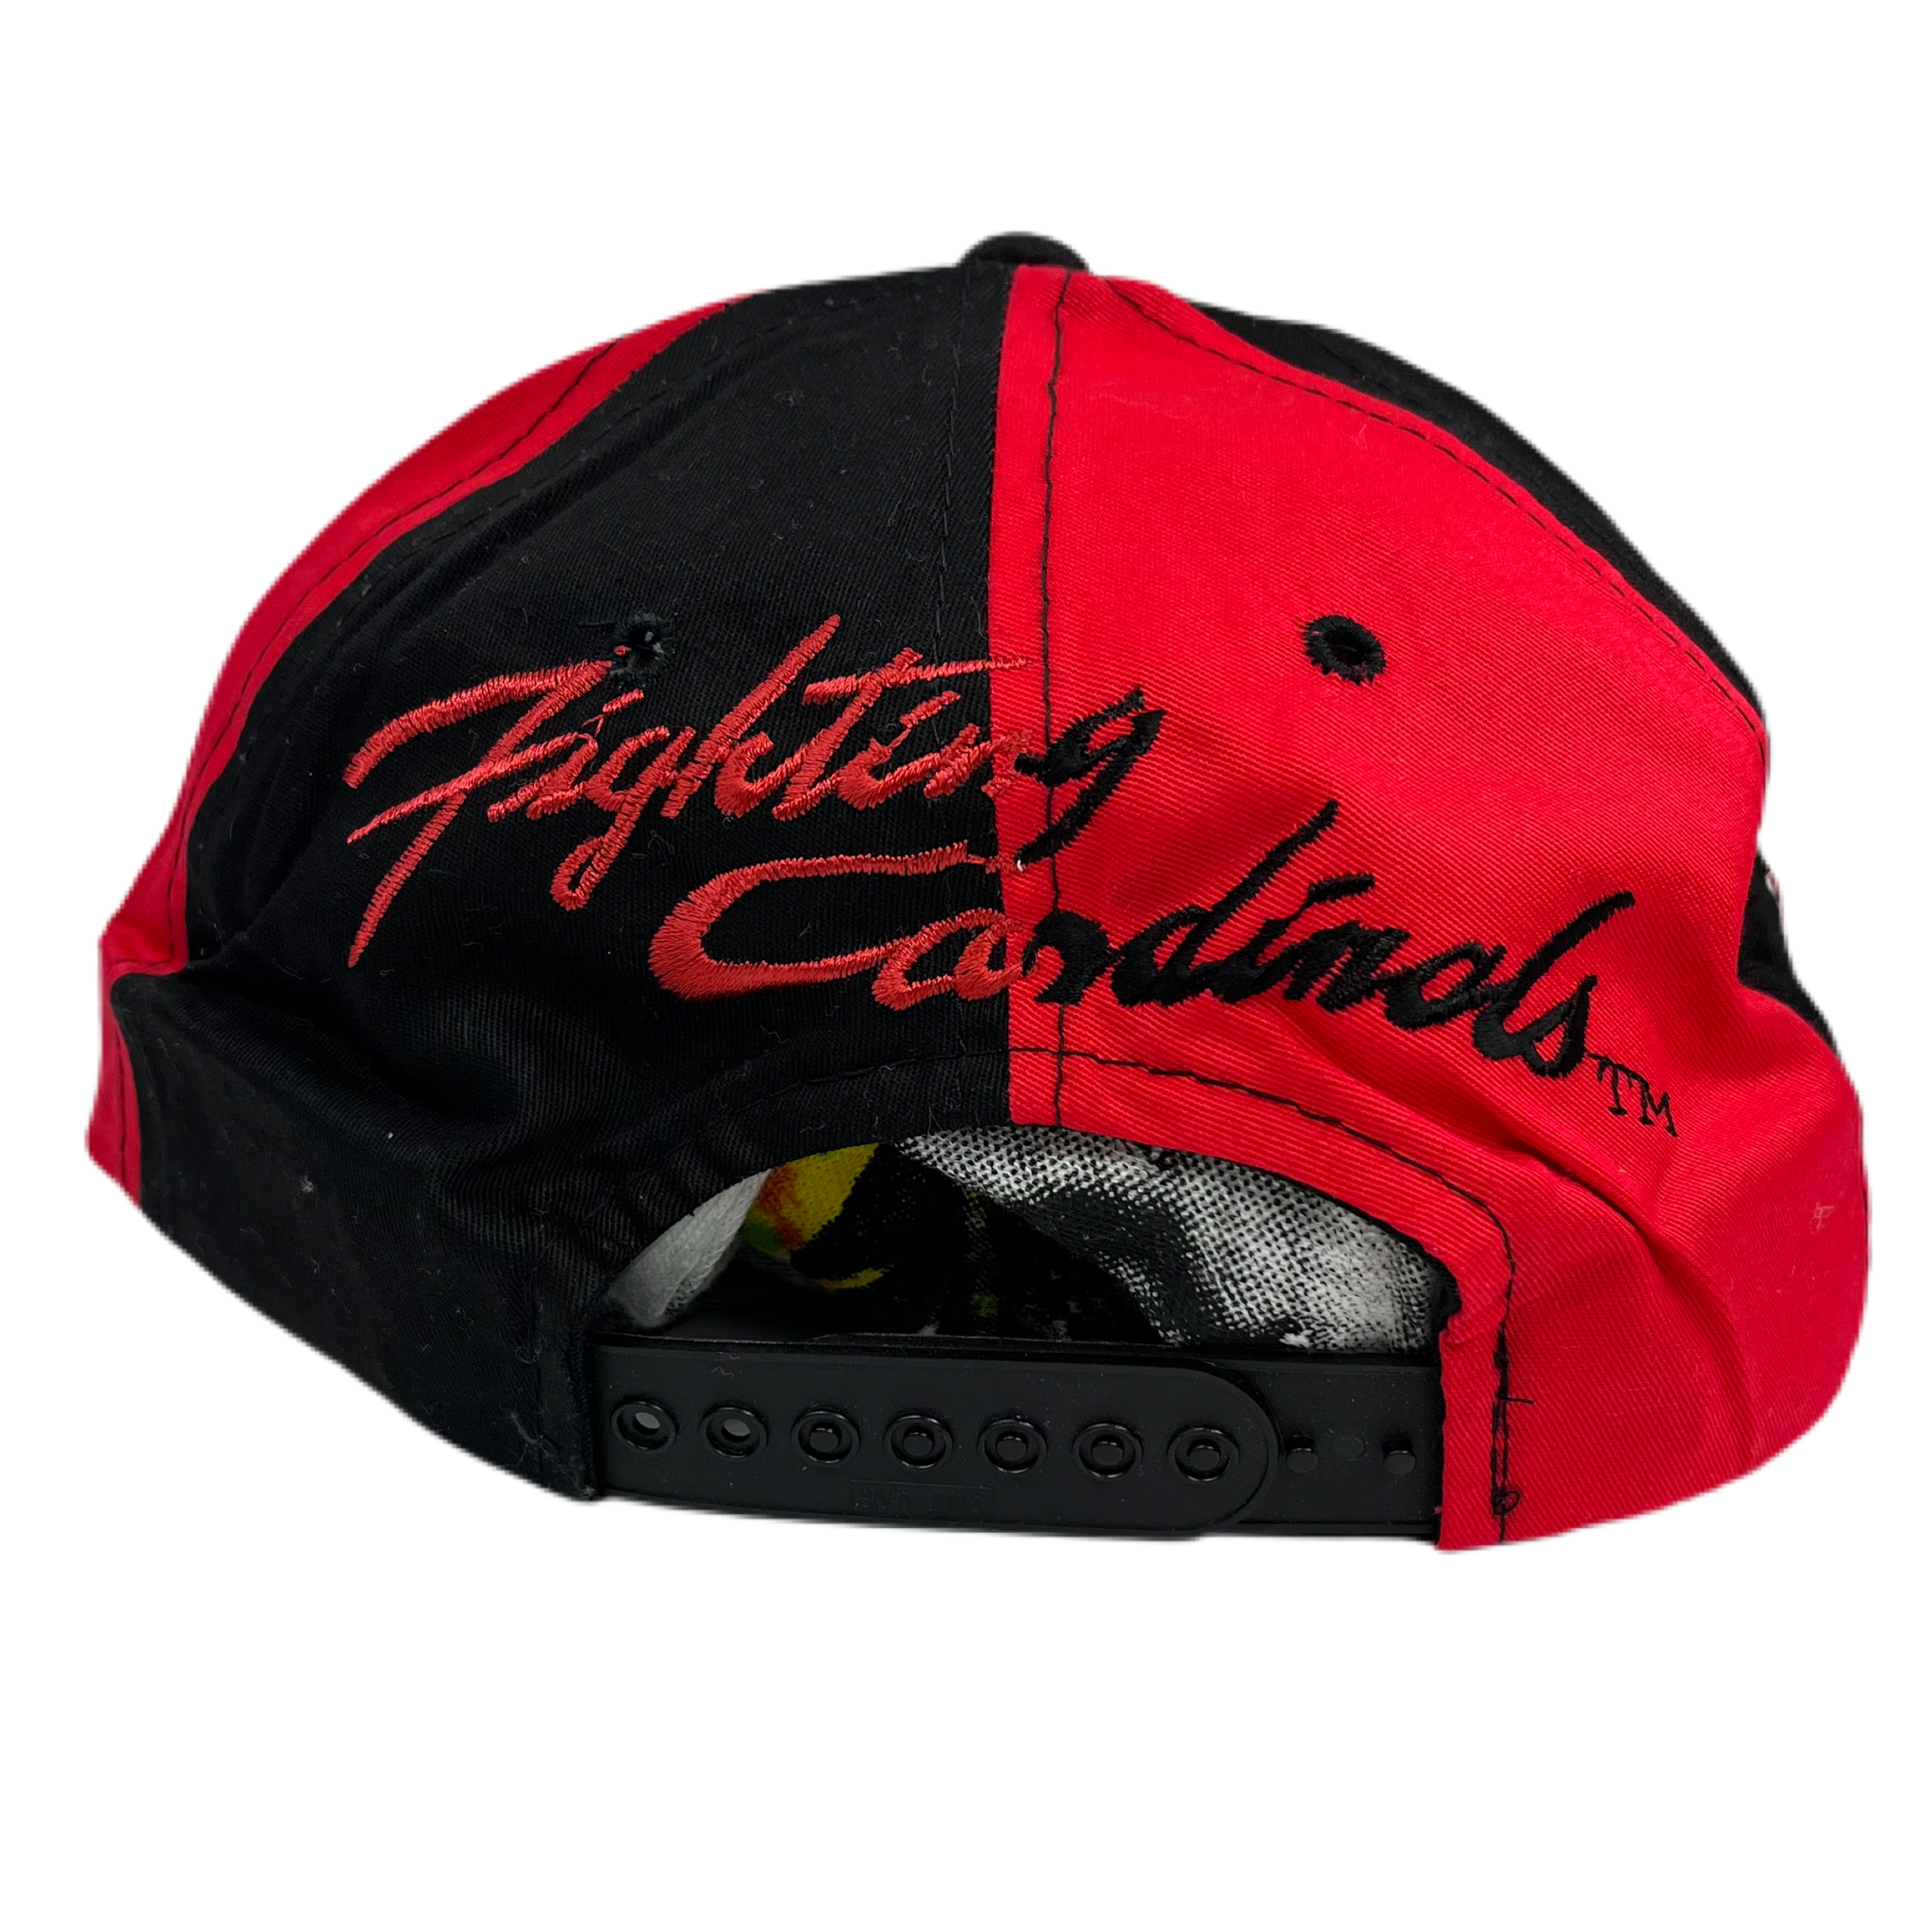 St. Louis Cardinals Hat Cardinals Hat Women's Baseball -  Hong